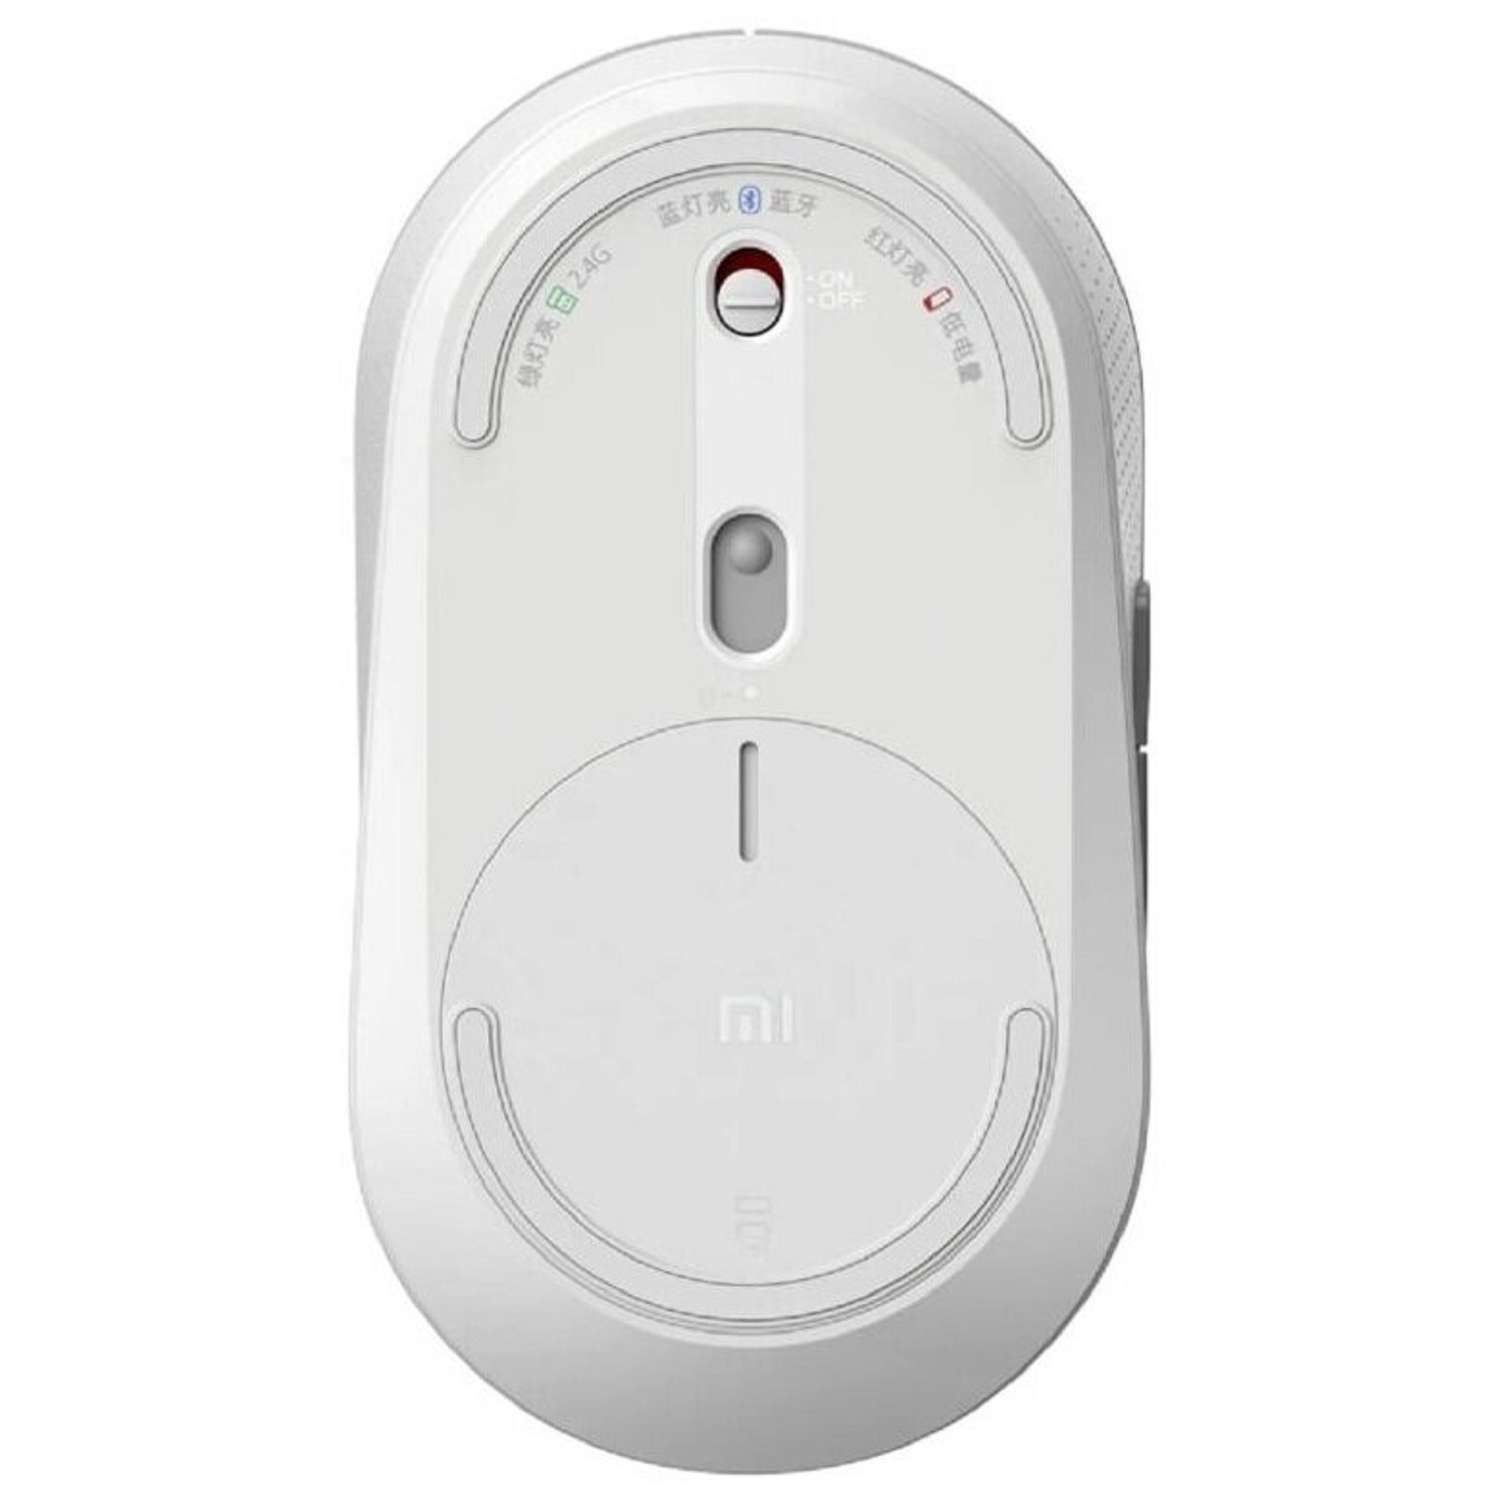 Мышь XIAOMI Mi Dual Mode Wireless Mouse Silent Edition беспроводная 1300 dpi usb белая - фото 3